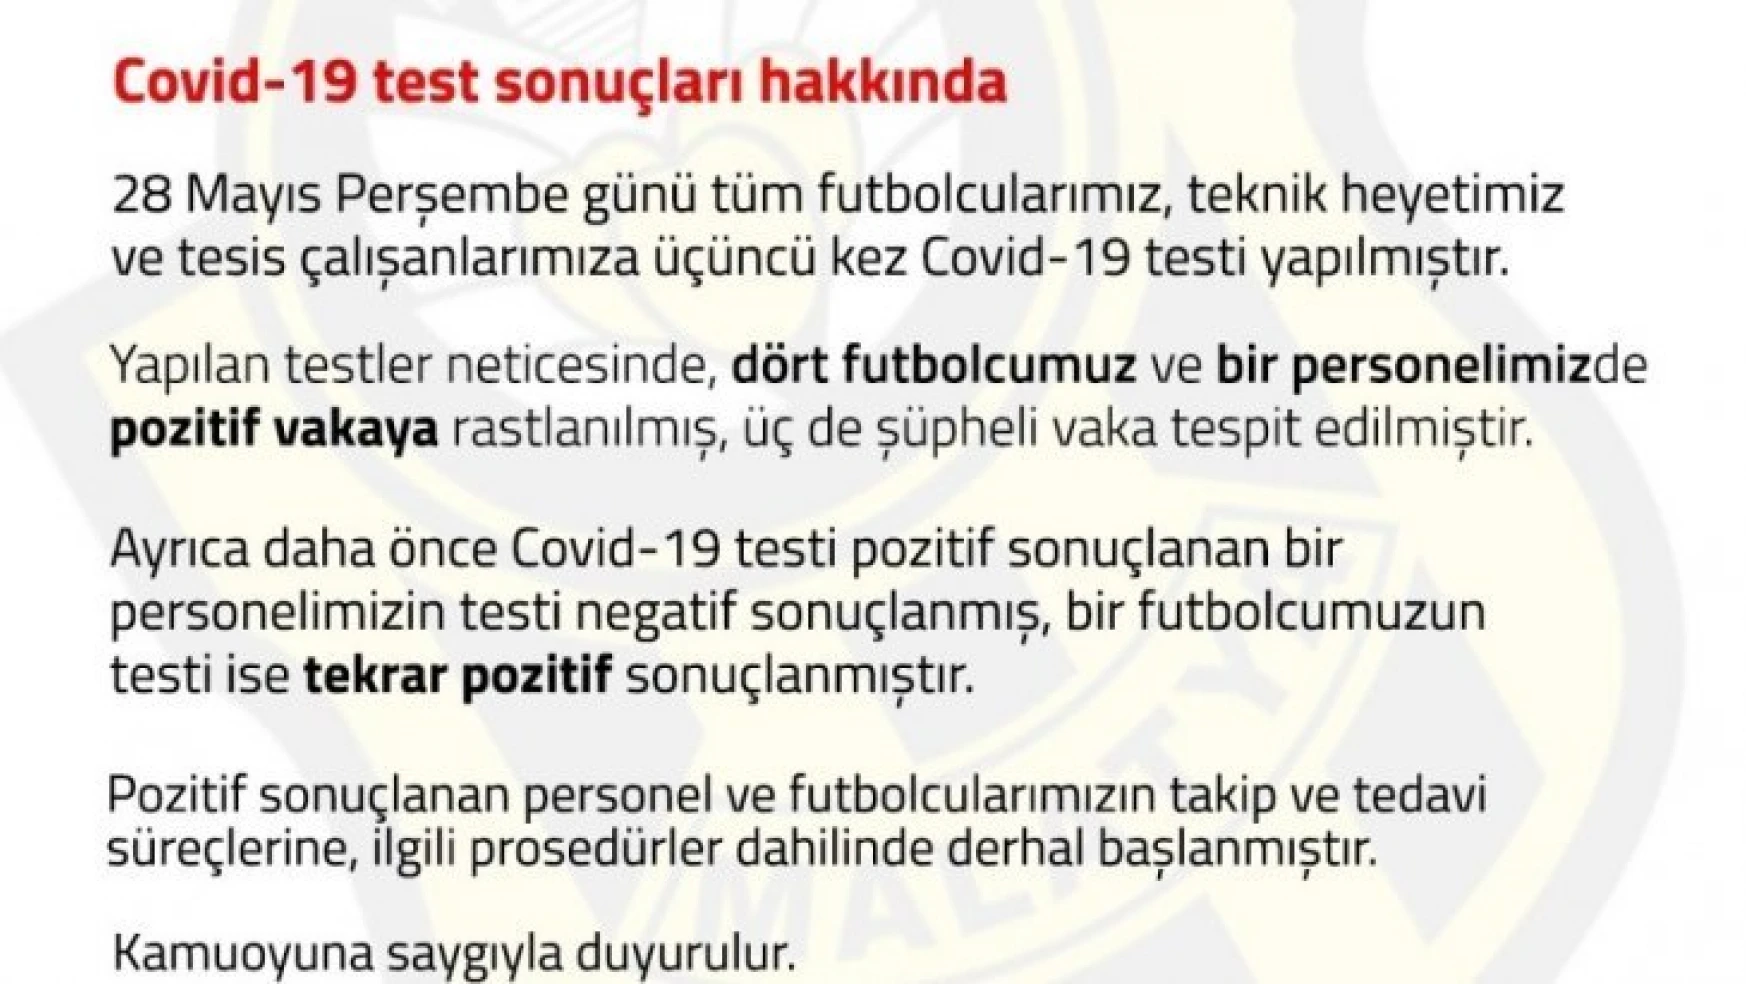 Yeni Malatyaspor'da 4 futbolcu ve 1 personel de korona virüs çıktı